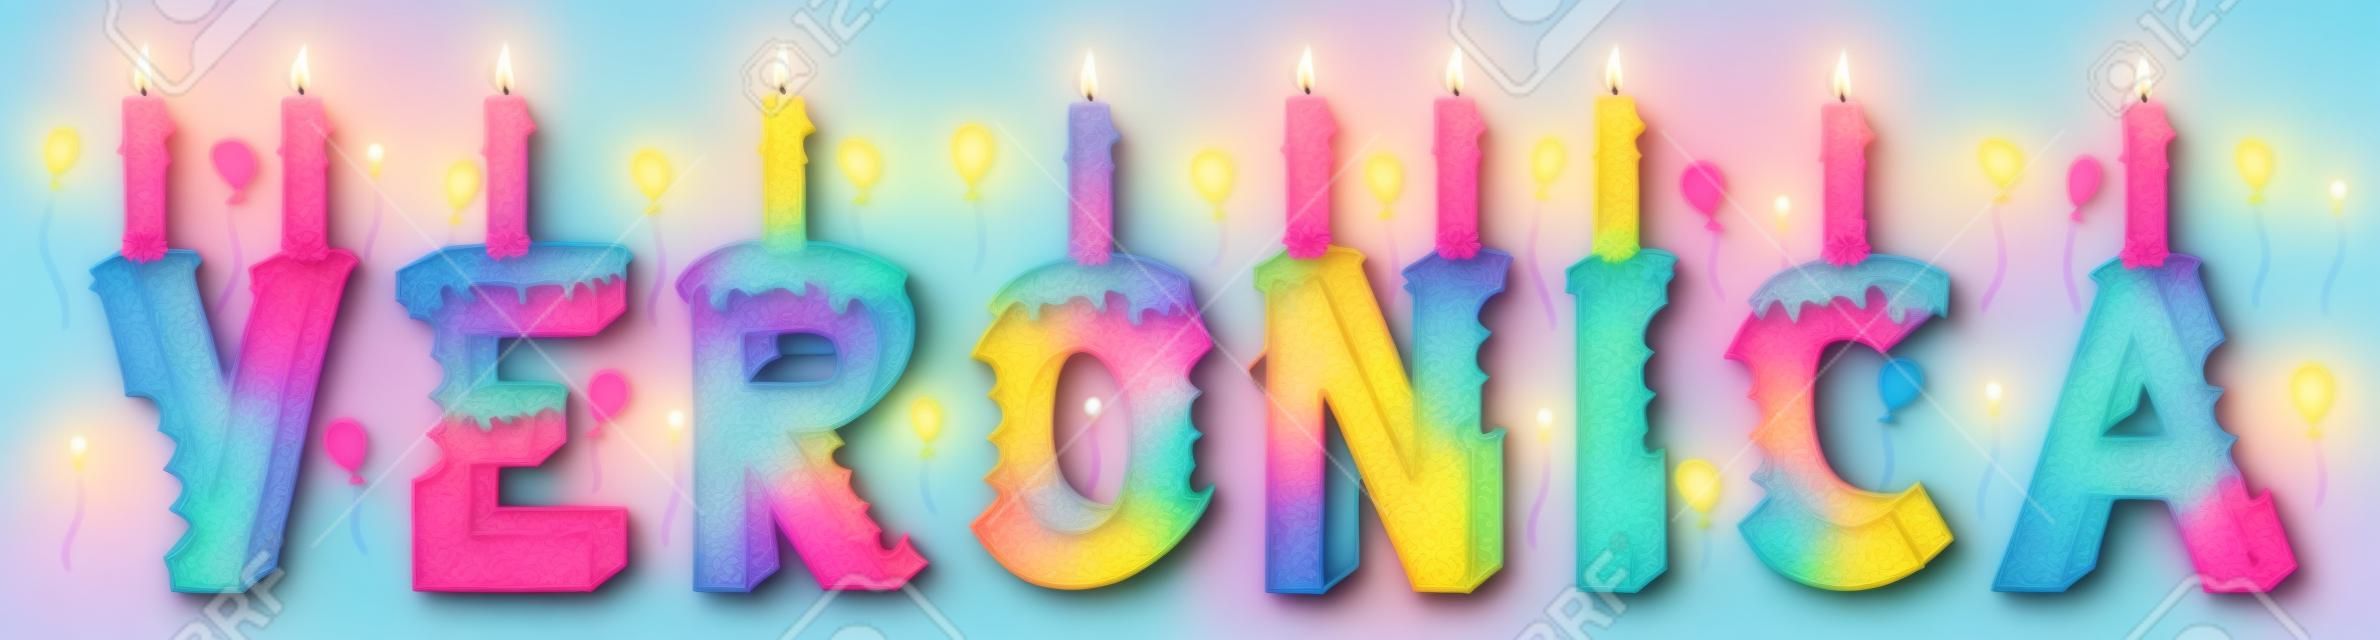 Veronica nombre femenino mordido. Colorido pastel de cumpleaños de letras 3d con velas y globos.